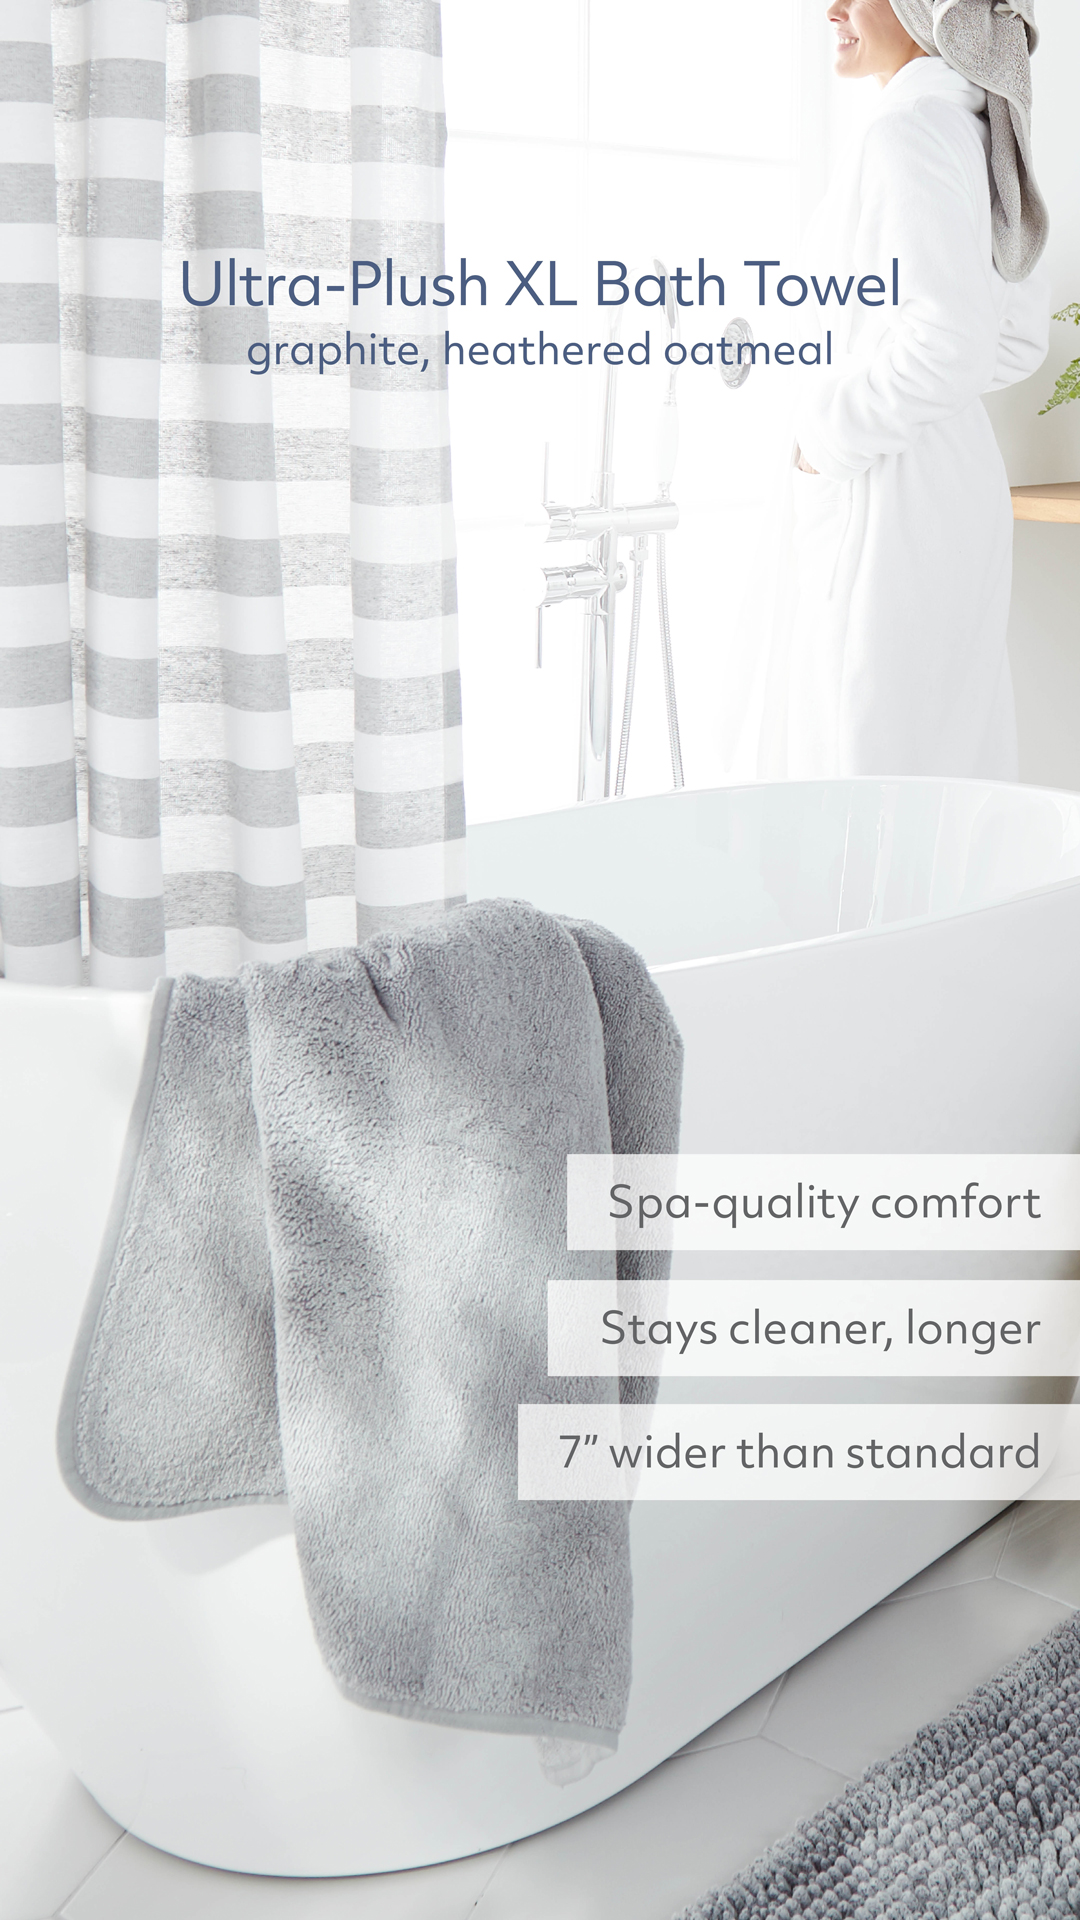 Norwex Bath Towel: A Review - Honest Norwex Reviews